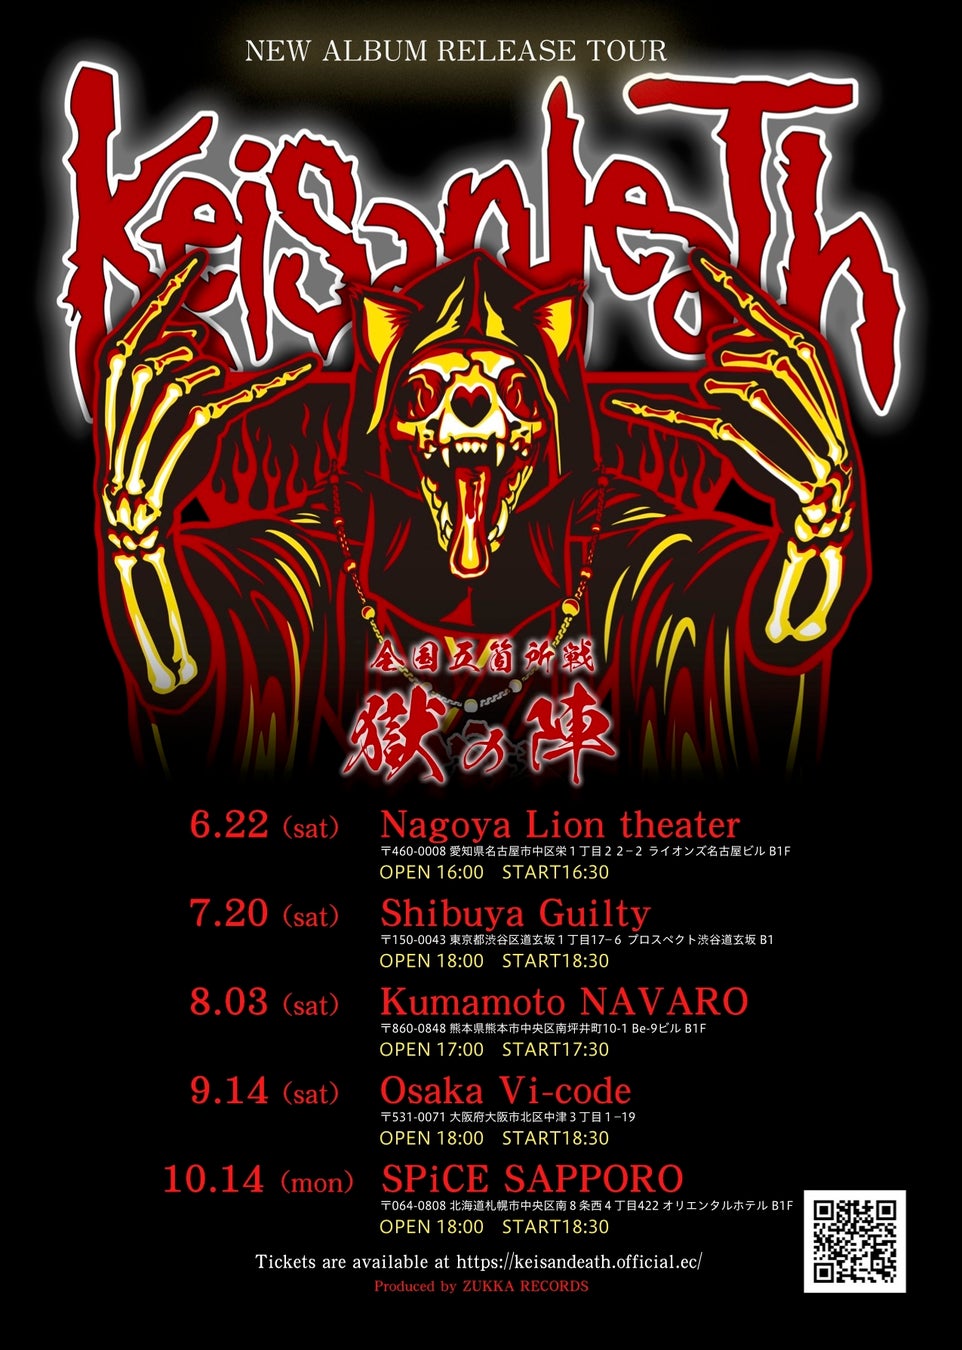 世界で人気のメタル系シンガーソングライターKeisandeathが全国ライブ開催中。8月1日リリースの二ューアルバム「獄」収録の新曲披露